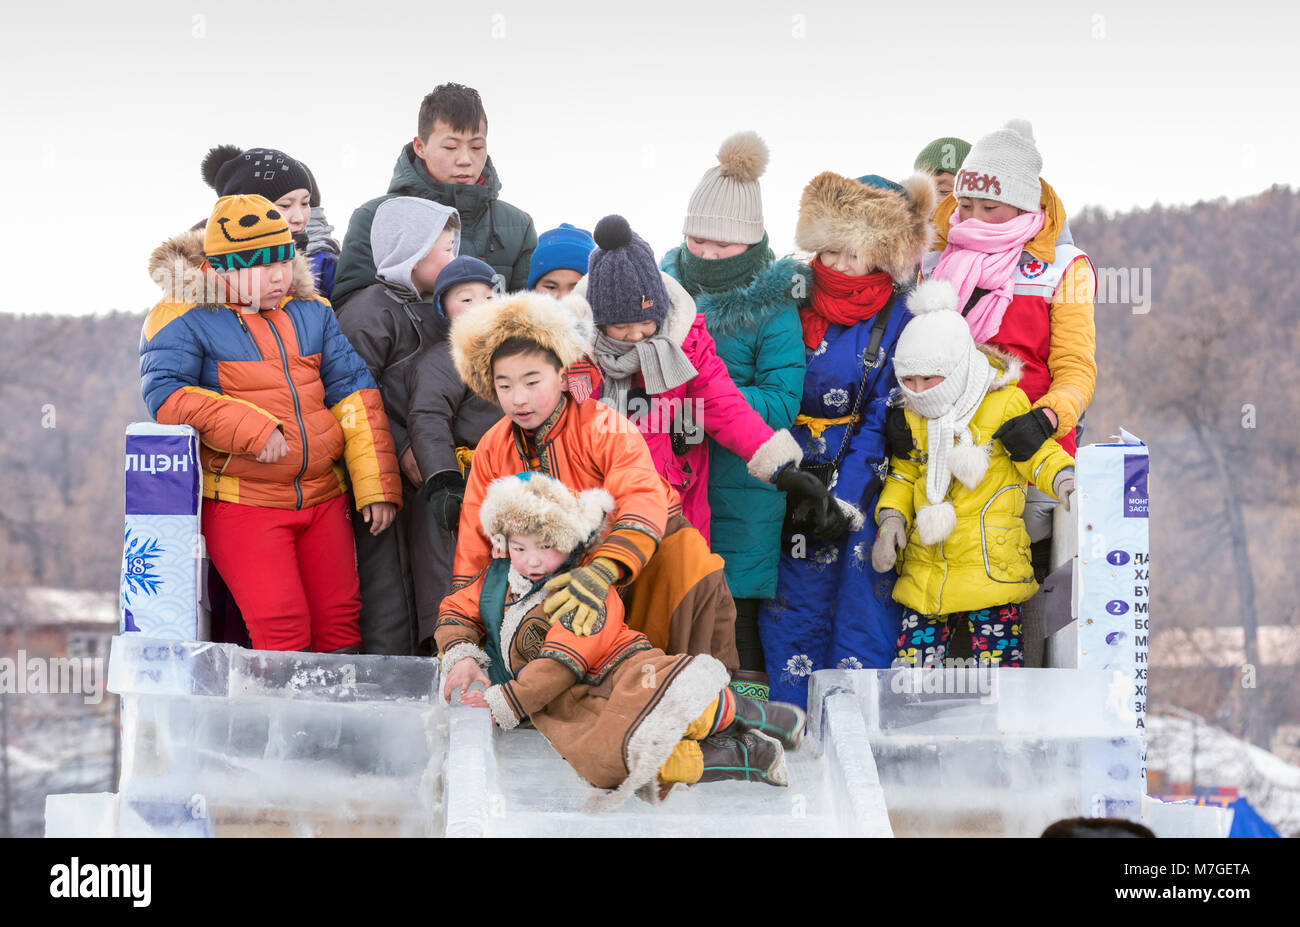 Hatgal, la Mongolie, le 4 mars 2018 : les enfants mongols habillés en vêtements traditionnels sur la glace d'un lac Khuvsgul, descendant un toboggan de glace madeout Banque D'Images